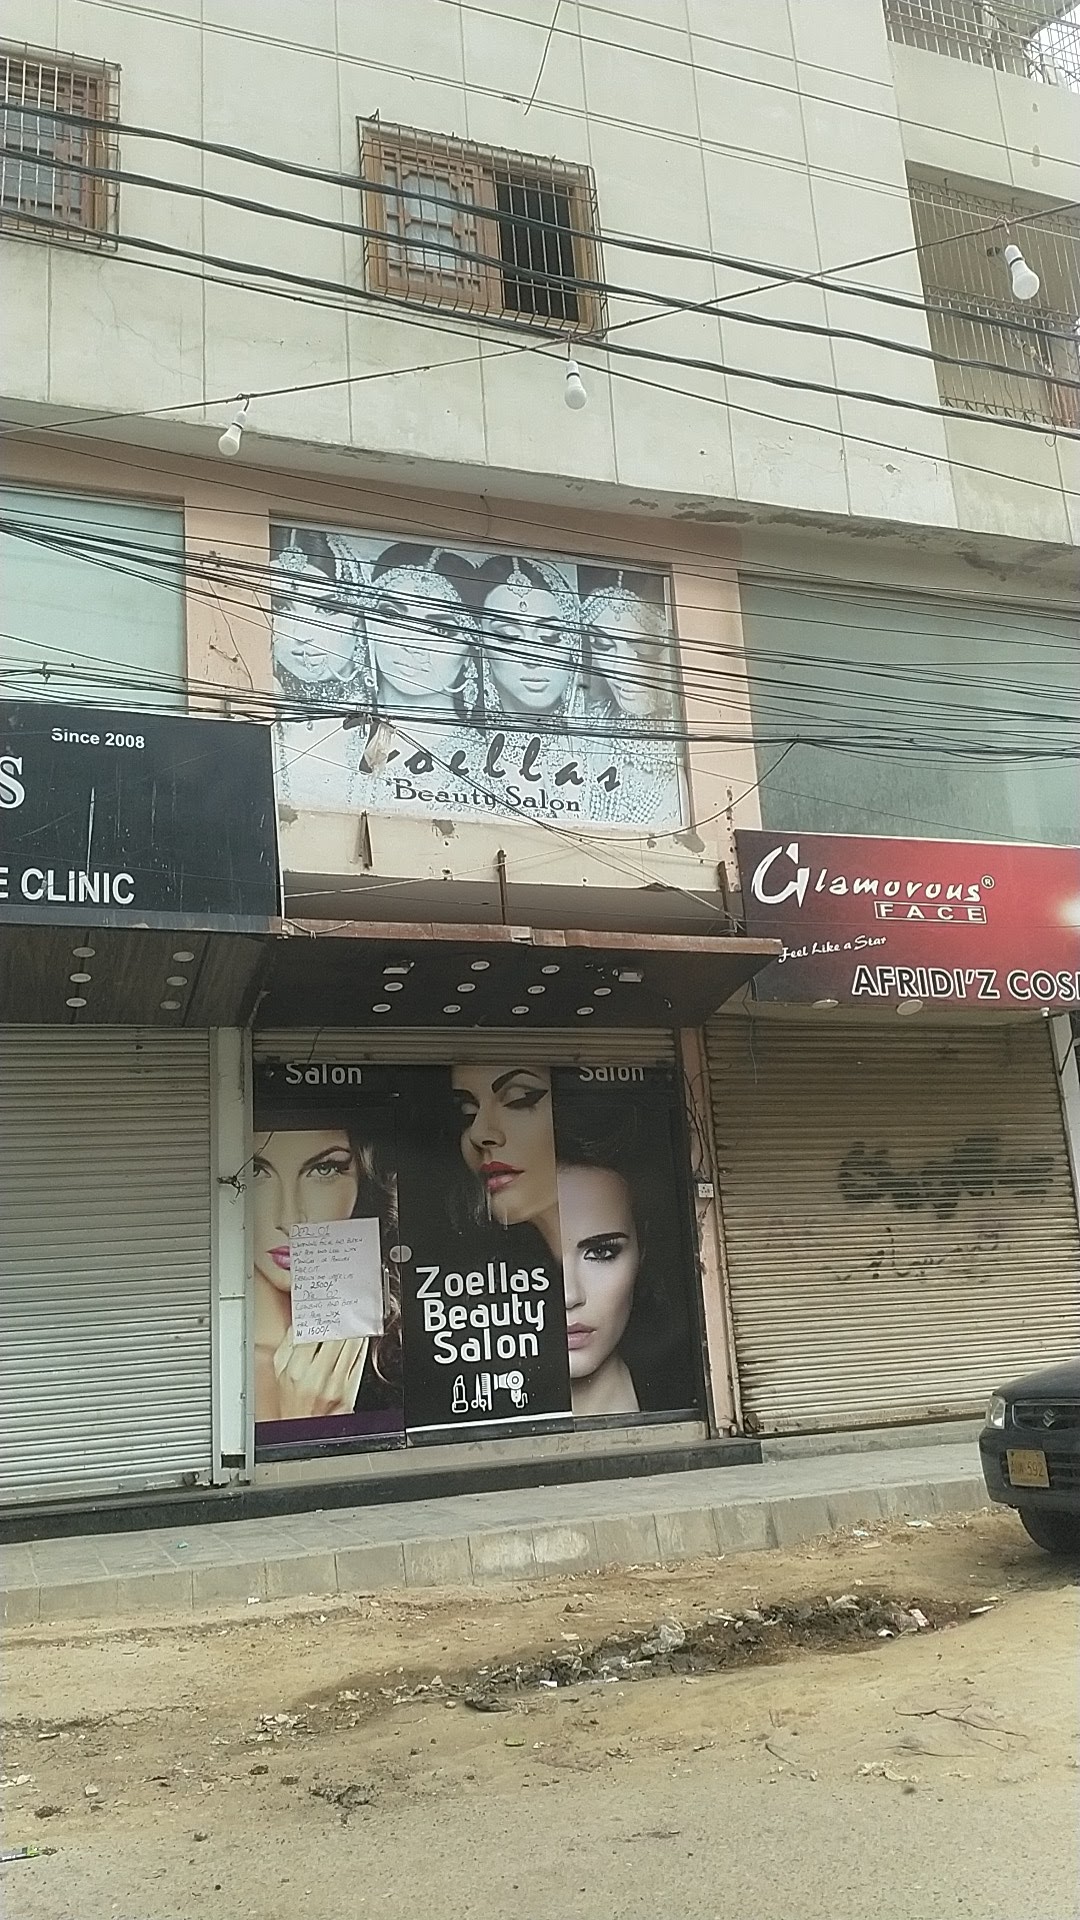 Zoellas beauty Salon